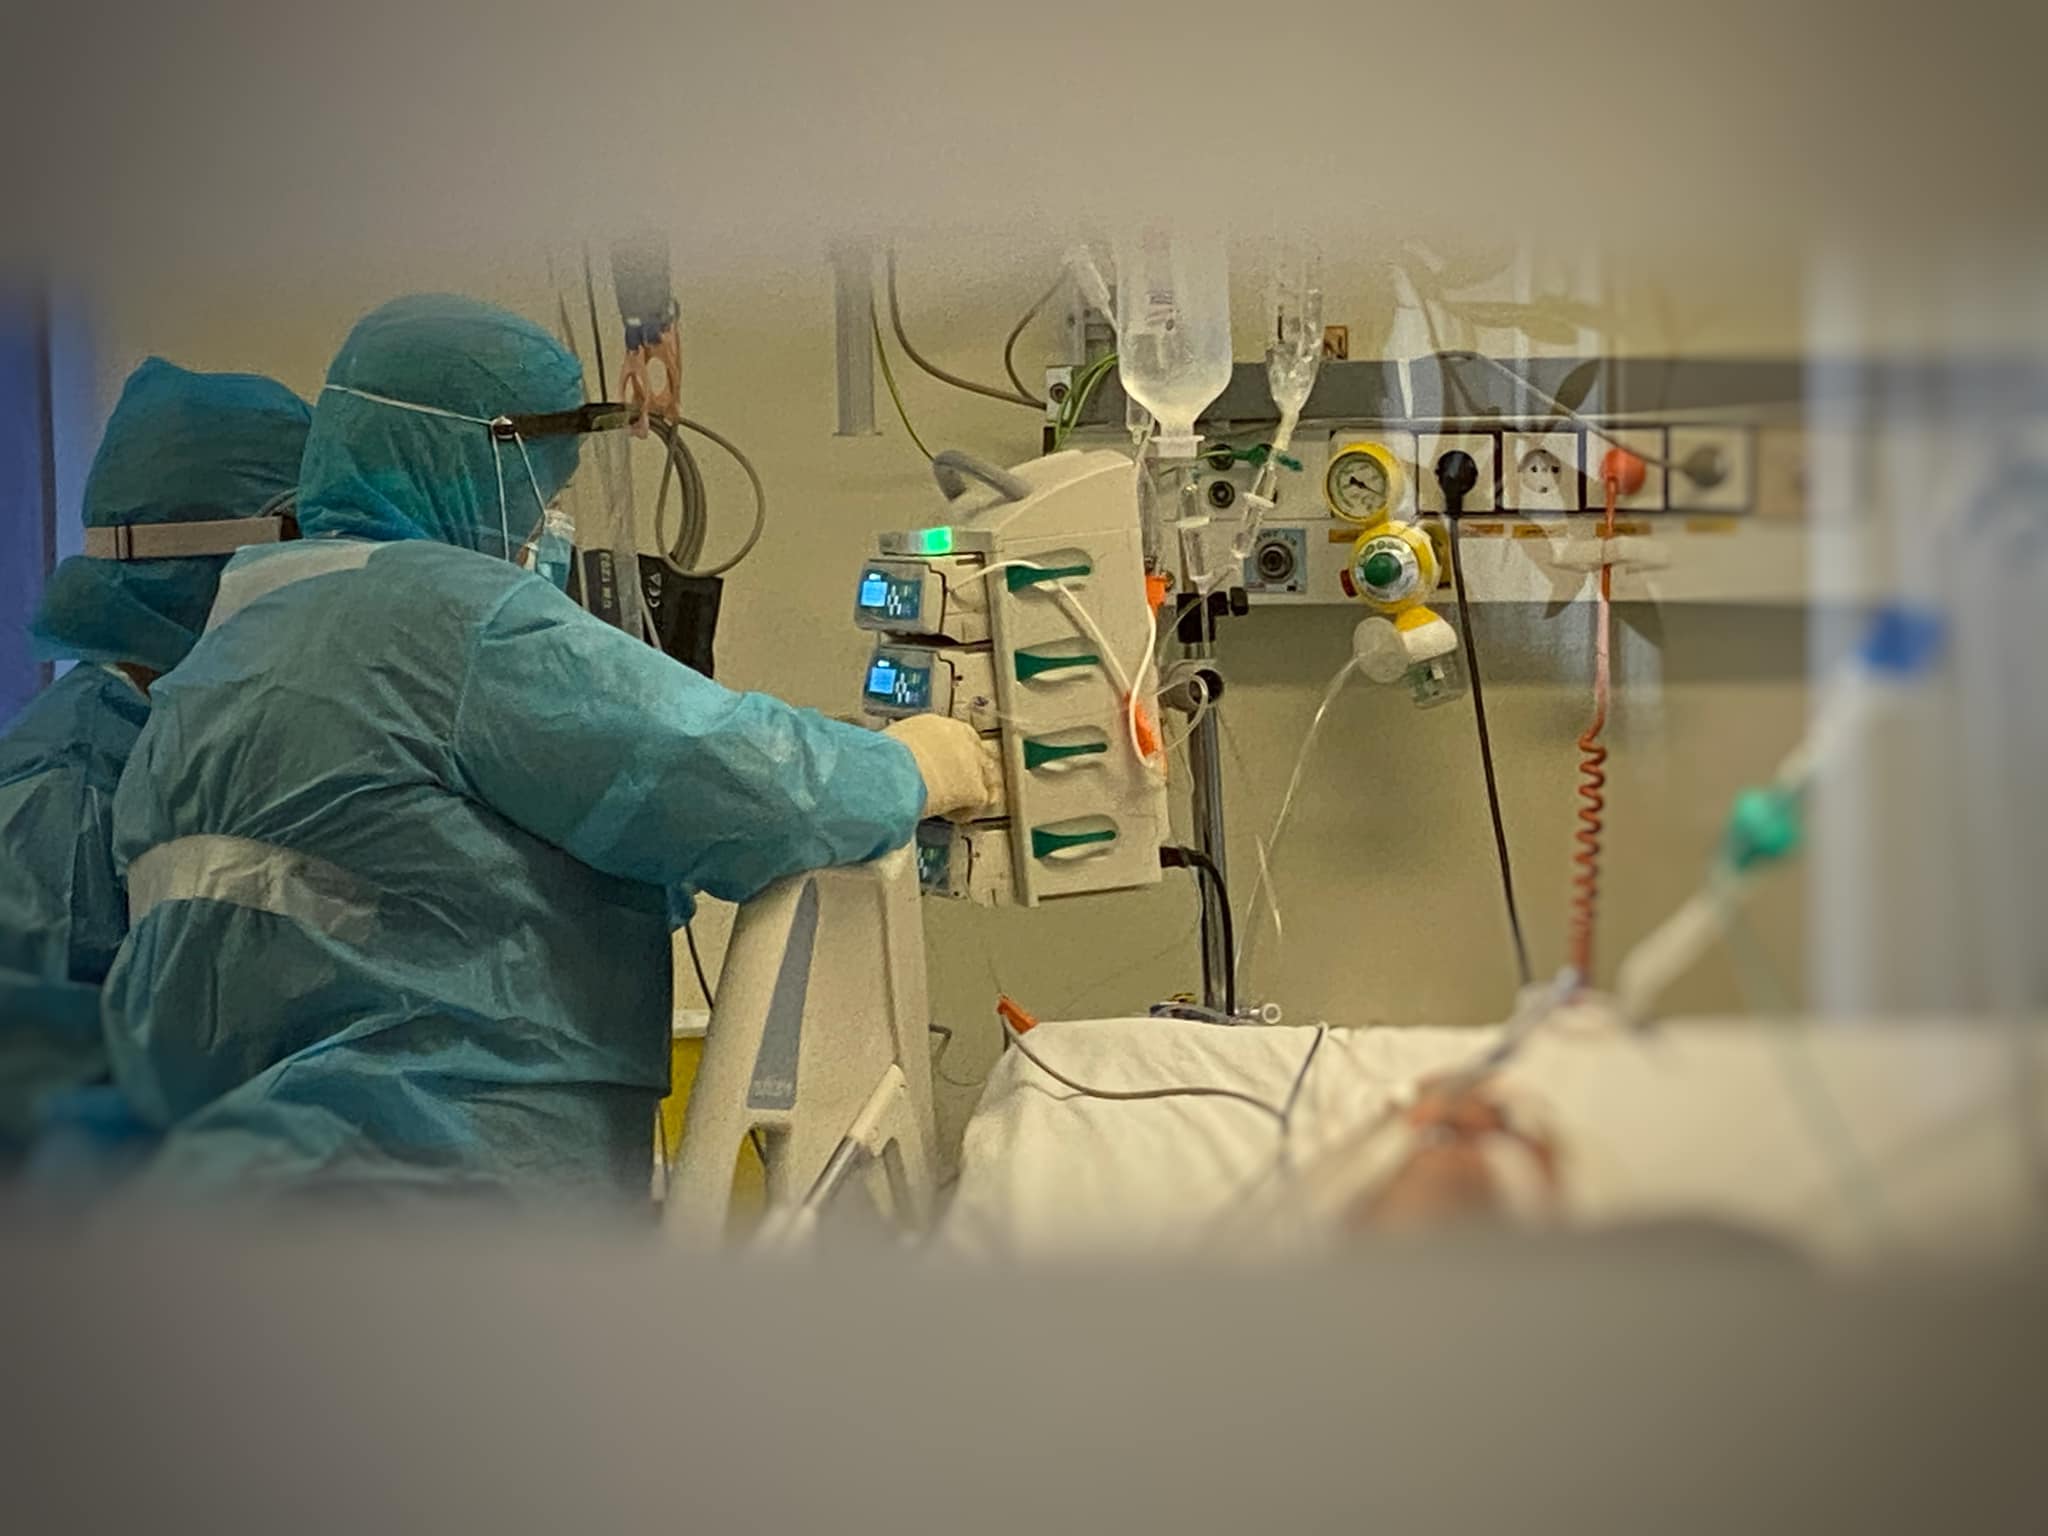 Ξάνθη: 90 ασθενείς με Covid-19 στο Νοσοκομείο – Δεκάδες θάνατοι